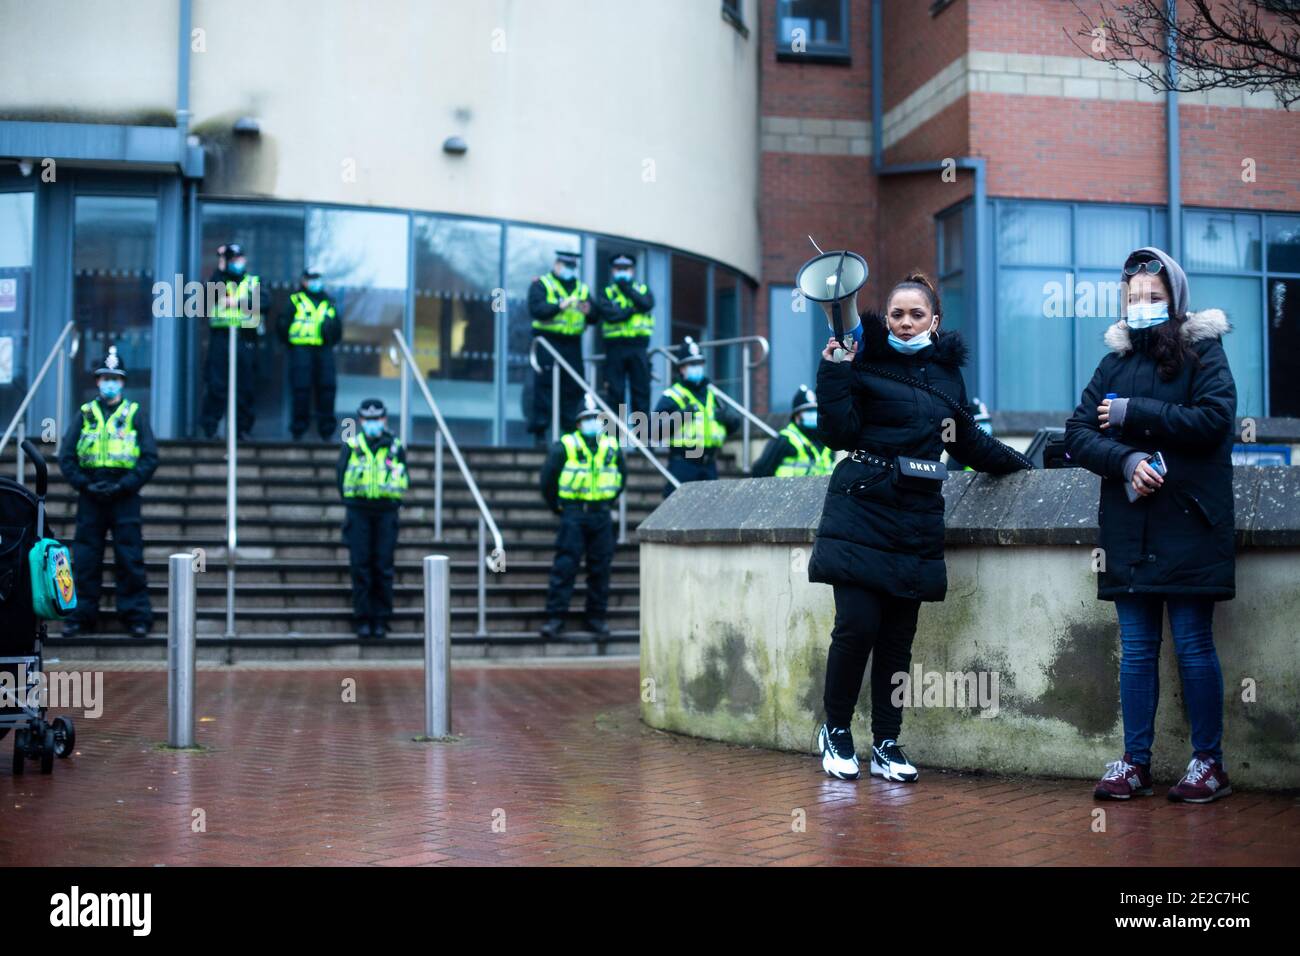 Les manifestants se réunissent à l'extérieur du poste de police de Cardiff Bay en solidarité pour obtenir des réponses et justice pour la mort de Mohamud Hassan, 24 ans, qui a été violemment arrêté par la police du sud du pays de Galles le 08/01/21 Banque D'Images